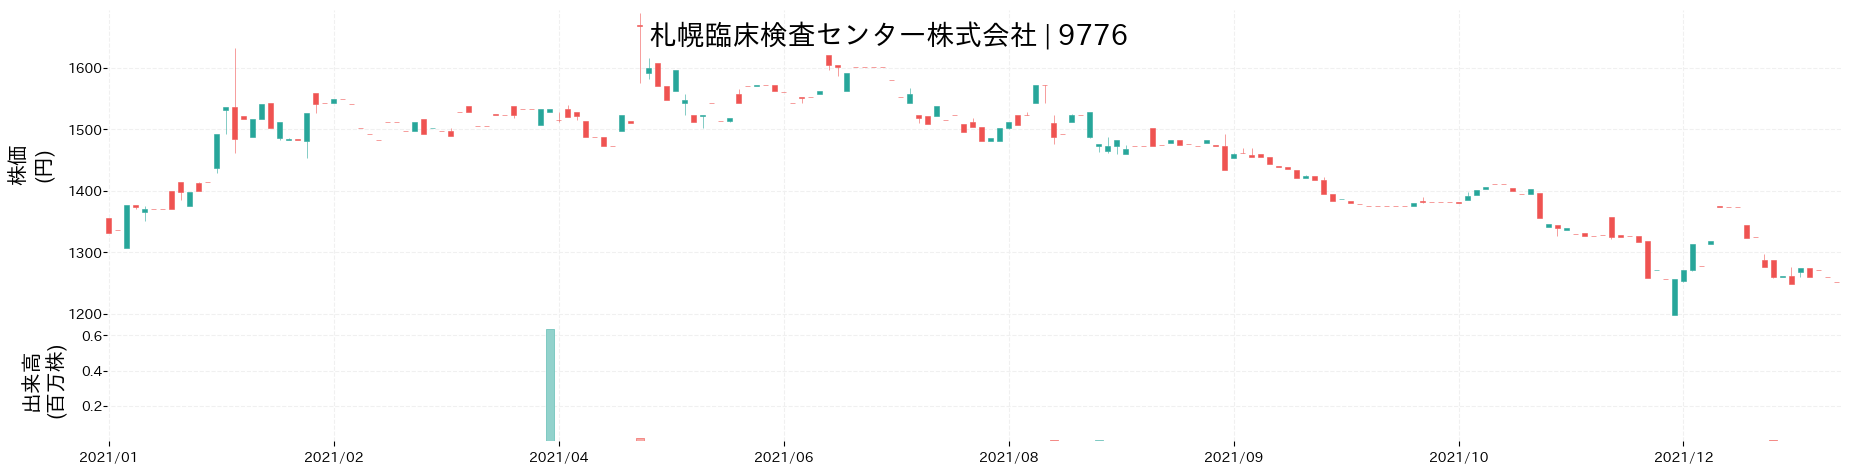 札幌臨床検査センターの株価推移(2021)